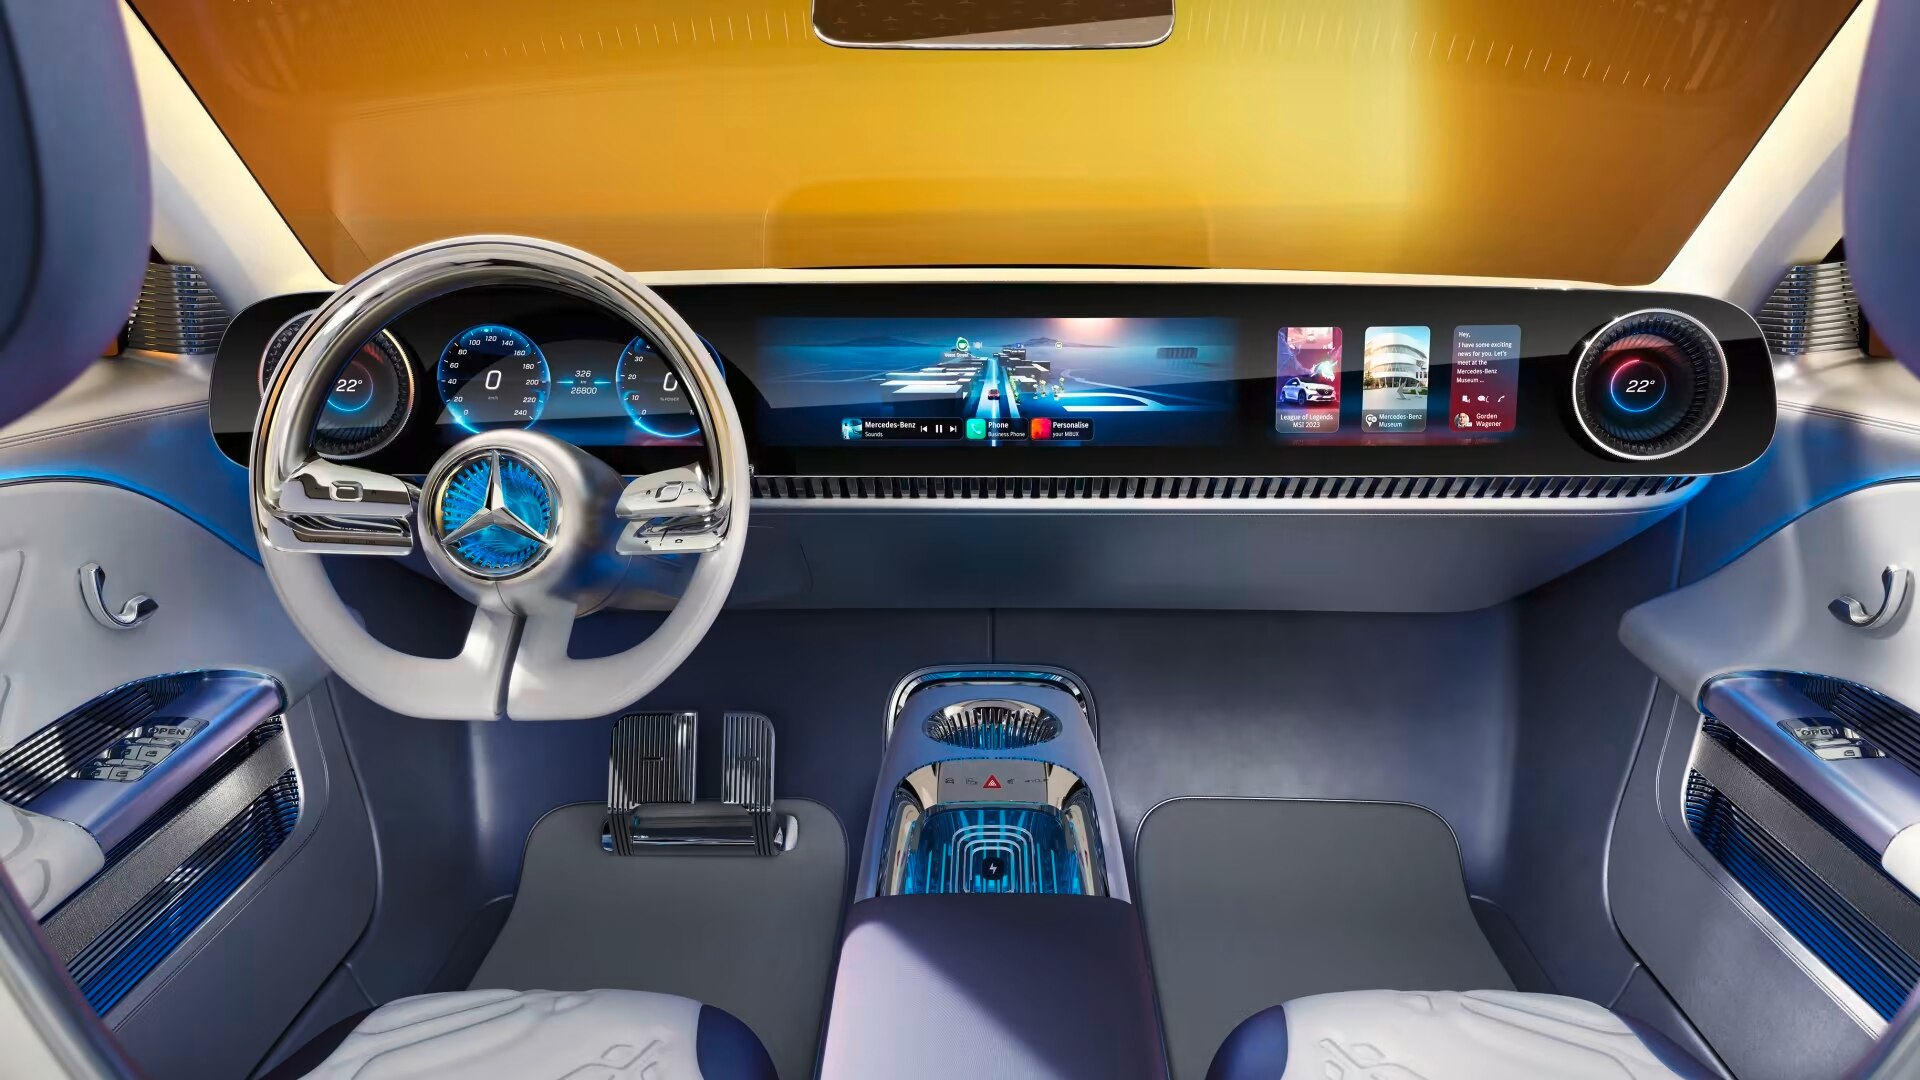 The Mercedes-Benz Concept CLA-Class Interior